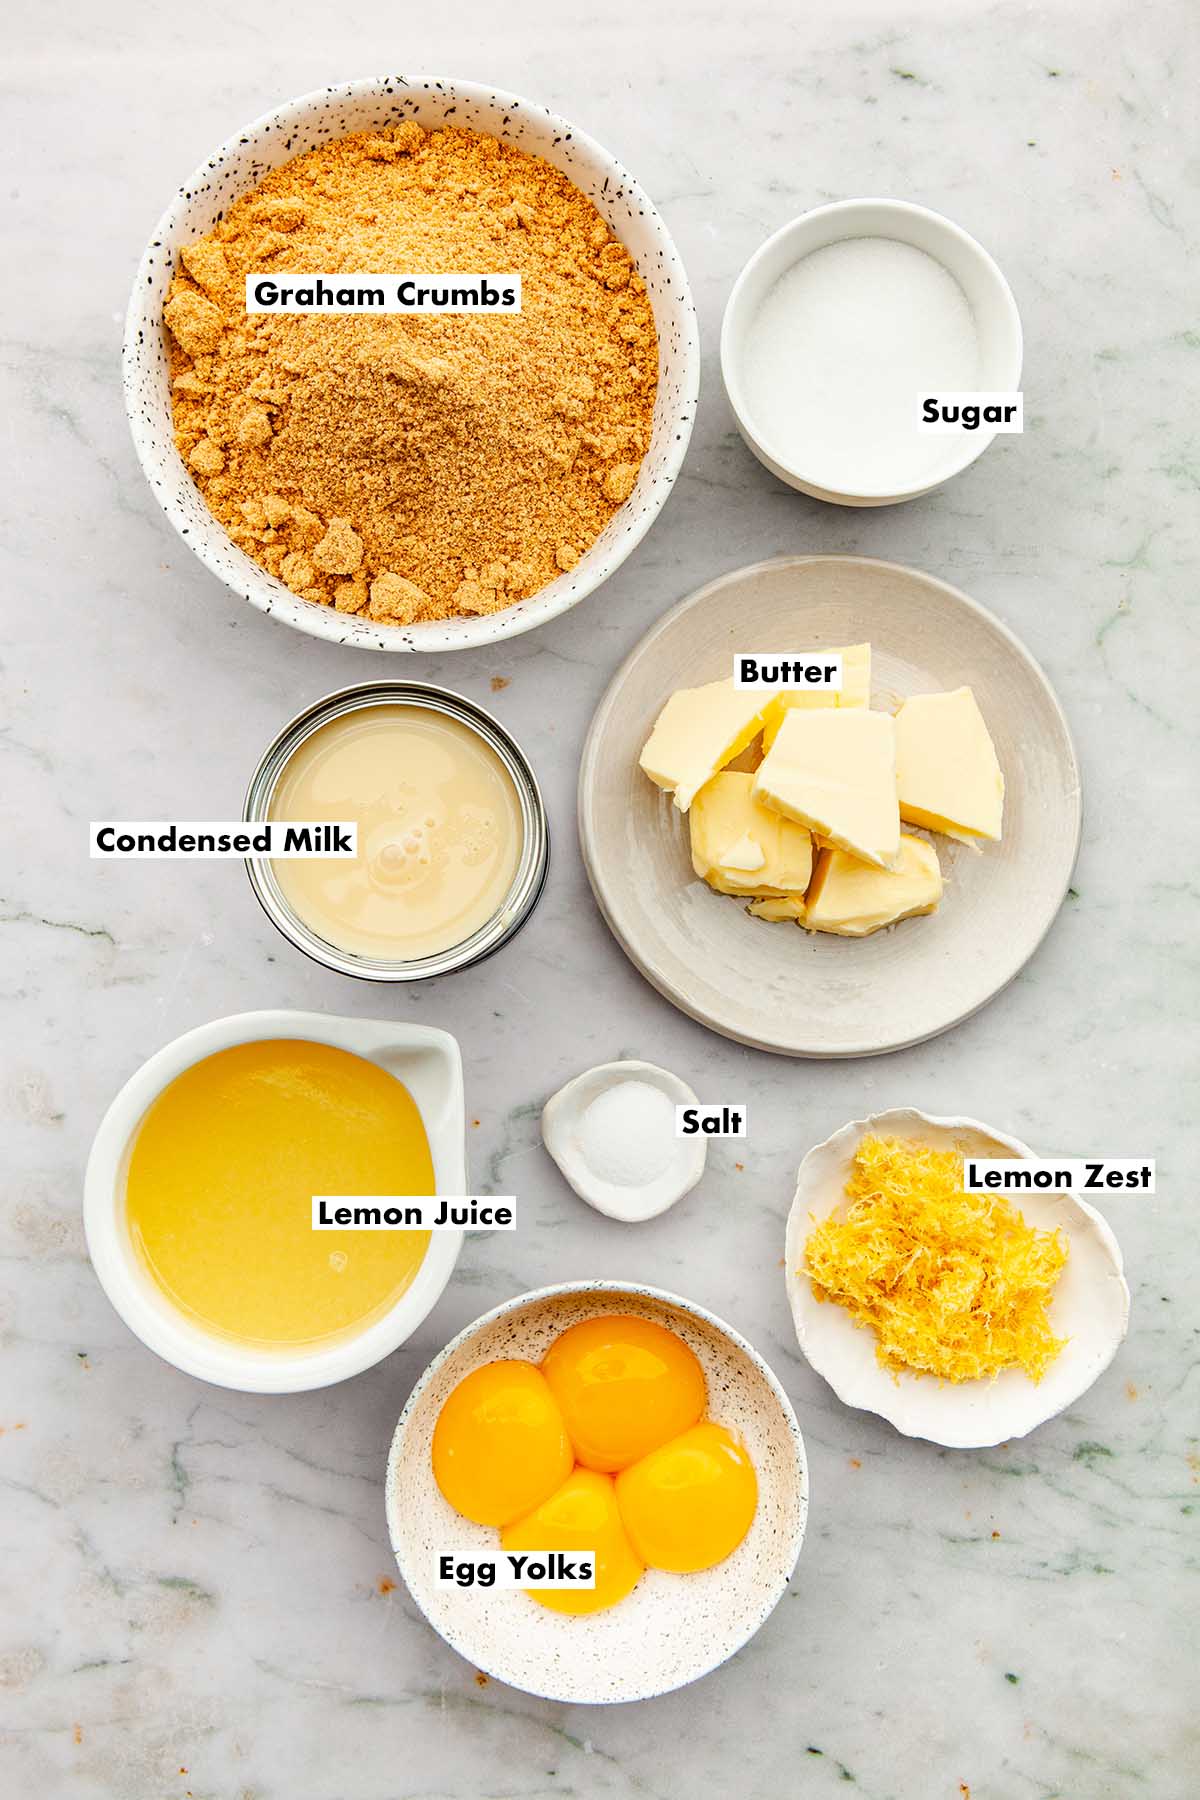 Ingredients to make condensed milk lemon slices.